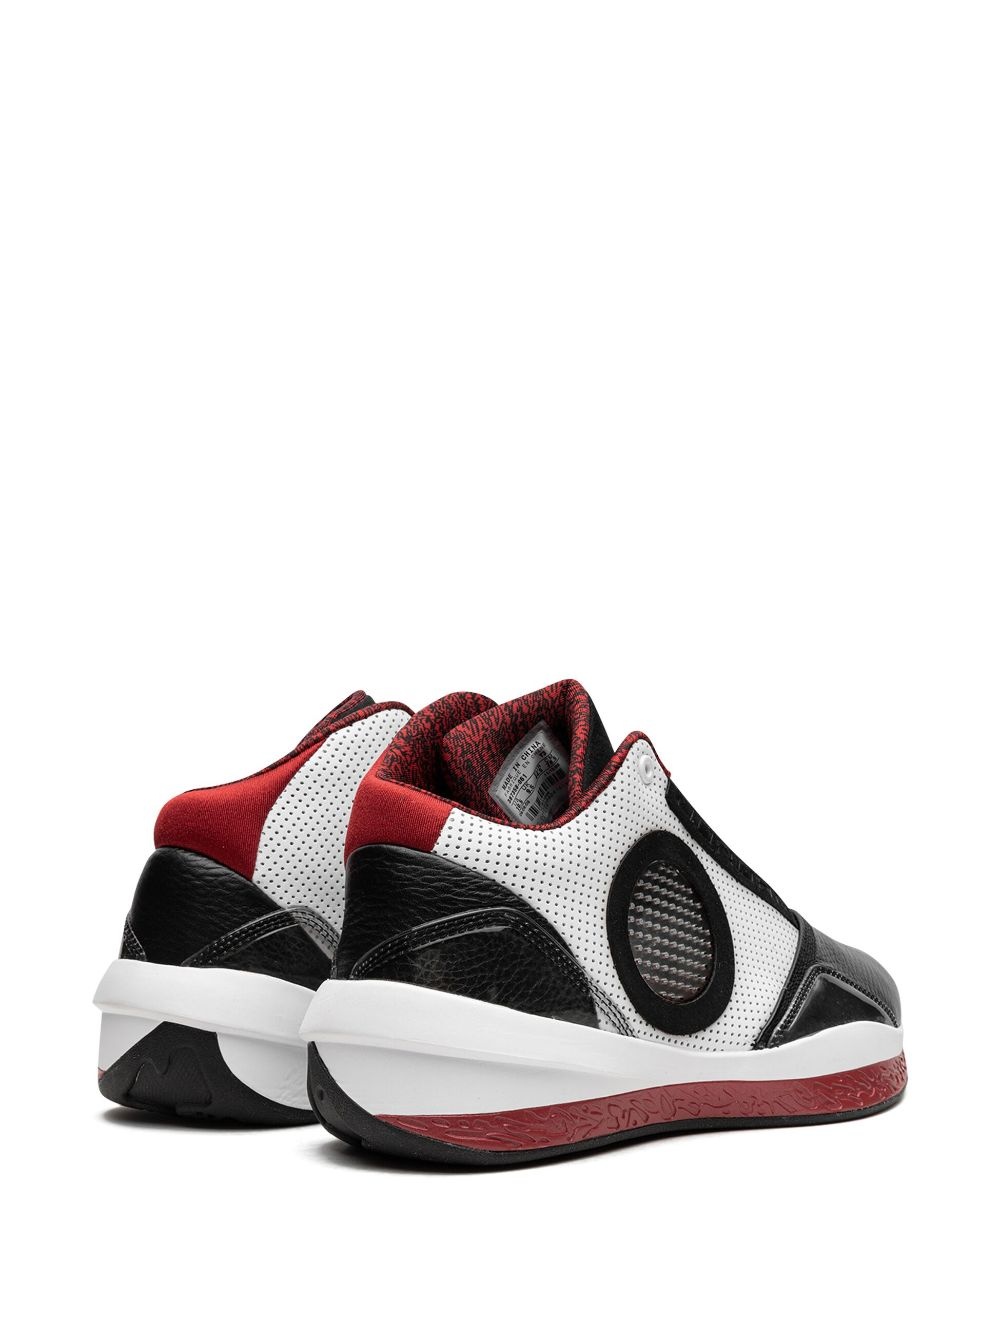 Air Jordan 2010 sneakers - 3